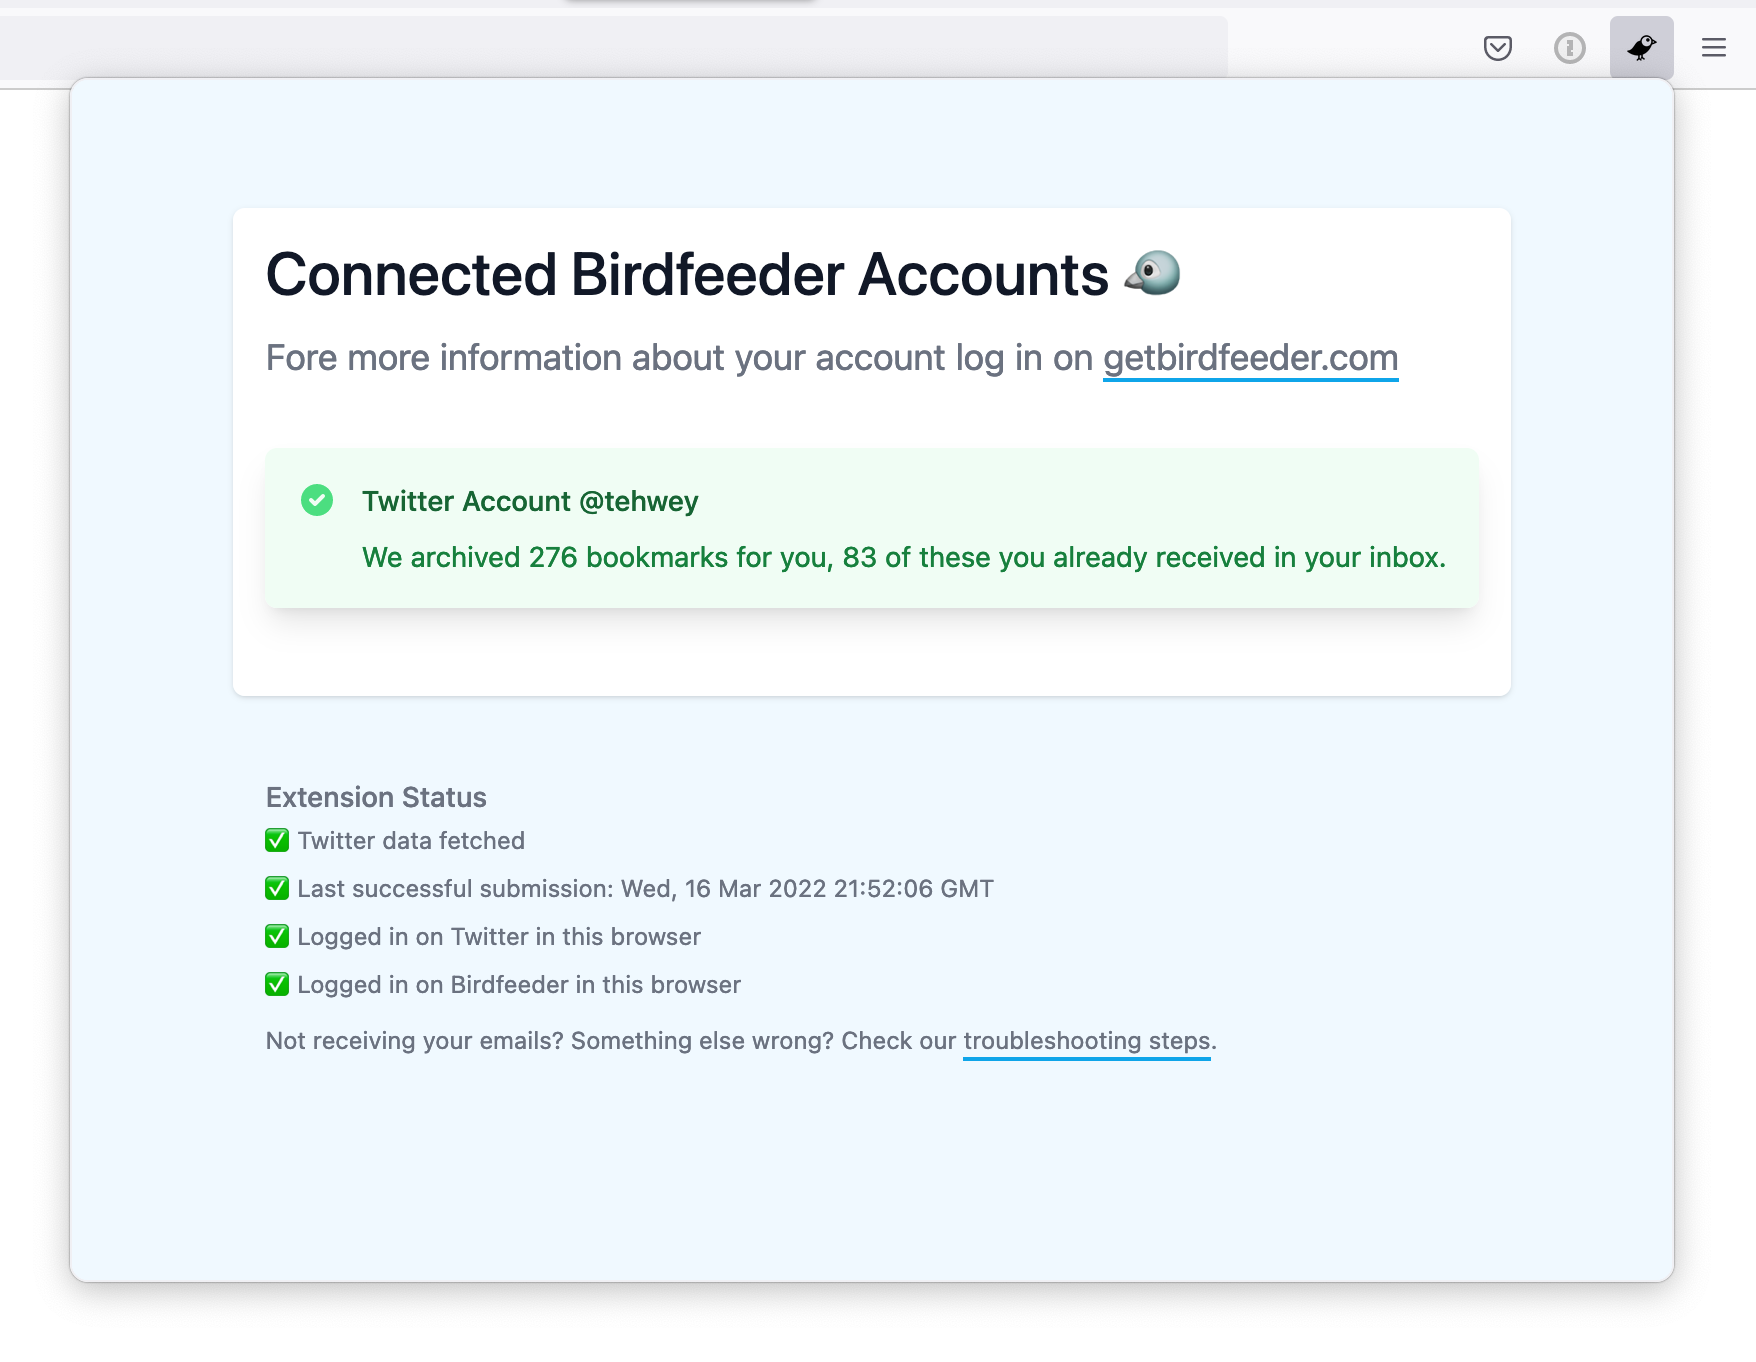 The Birdfeeder browser extension